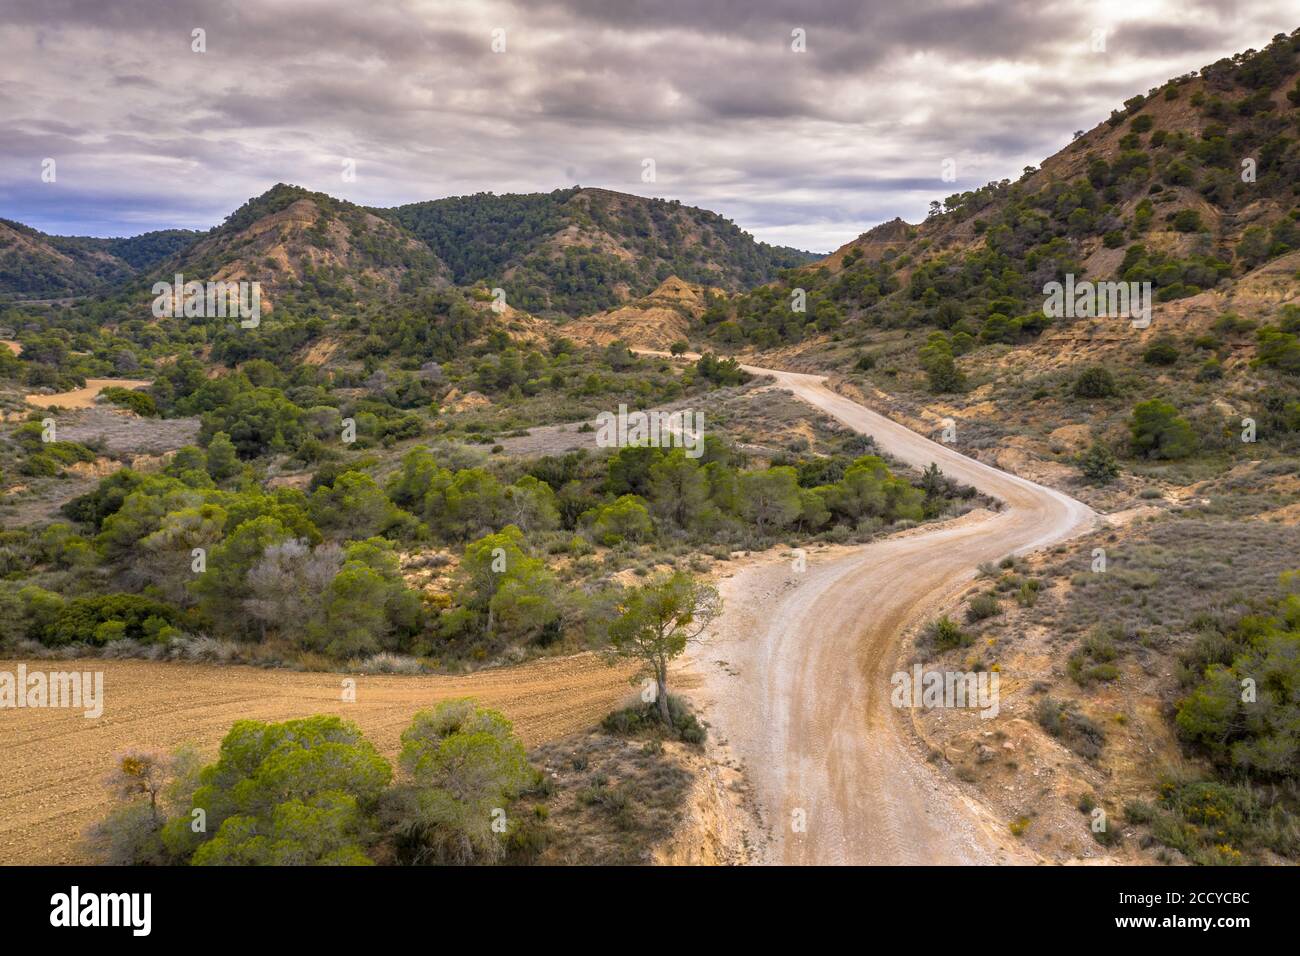 Vue aérienne de la route de terre à travers le paysage aride du Castejon de Monegros dans les montagnes d'Alcubierre, Aragon, Espagne Banque D'Images